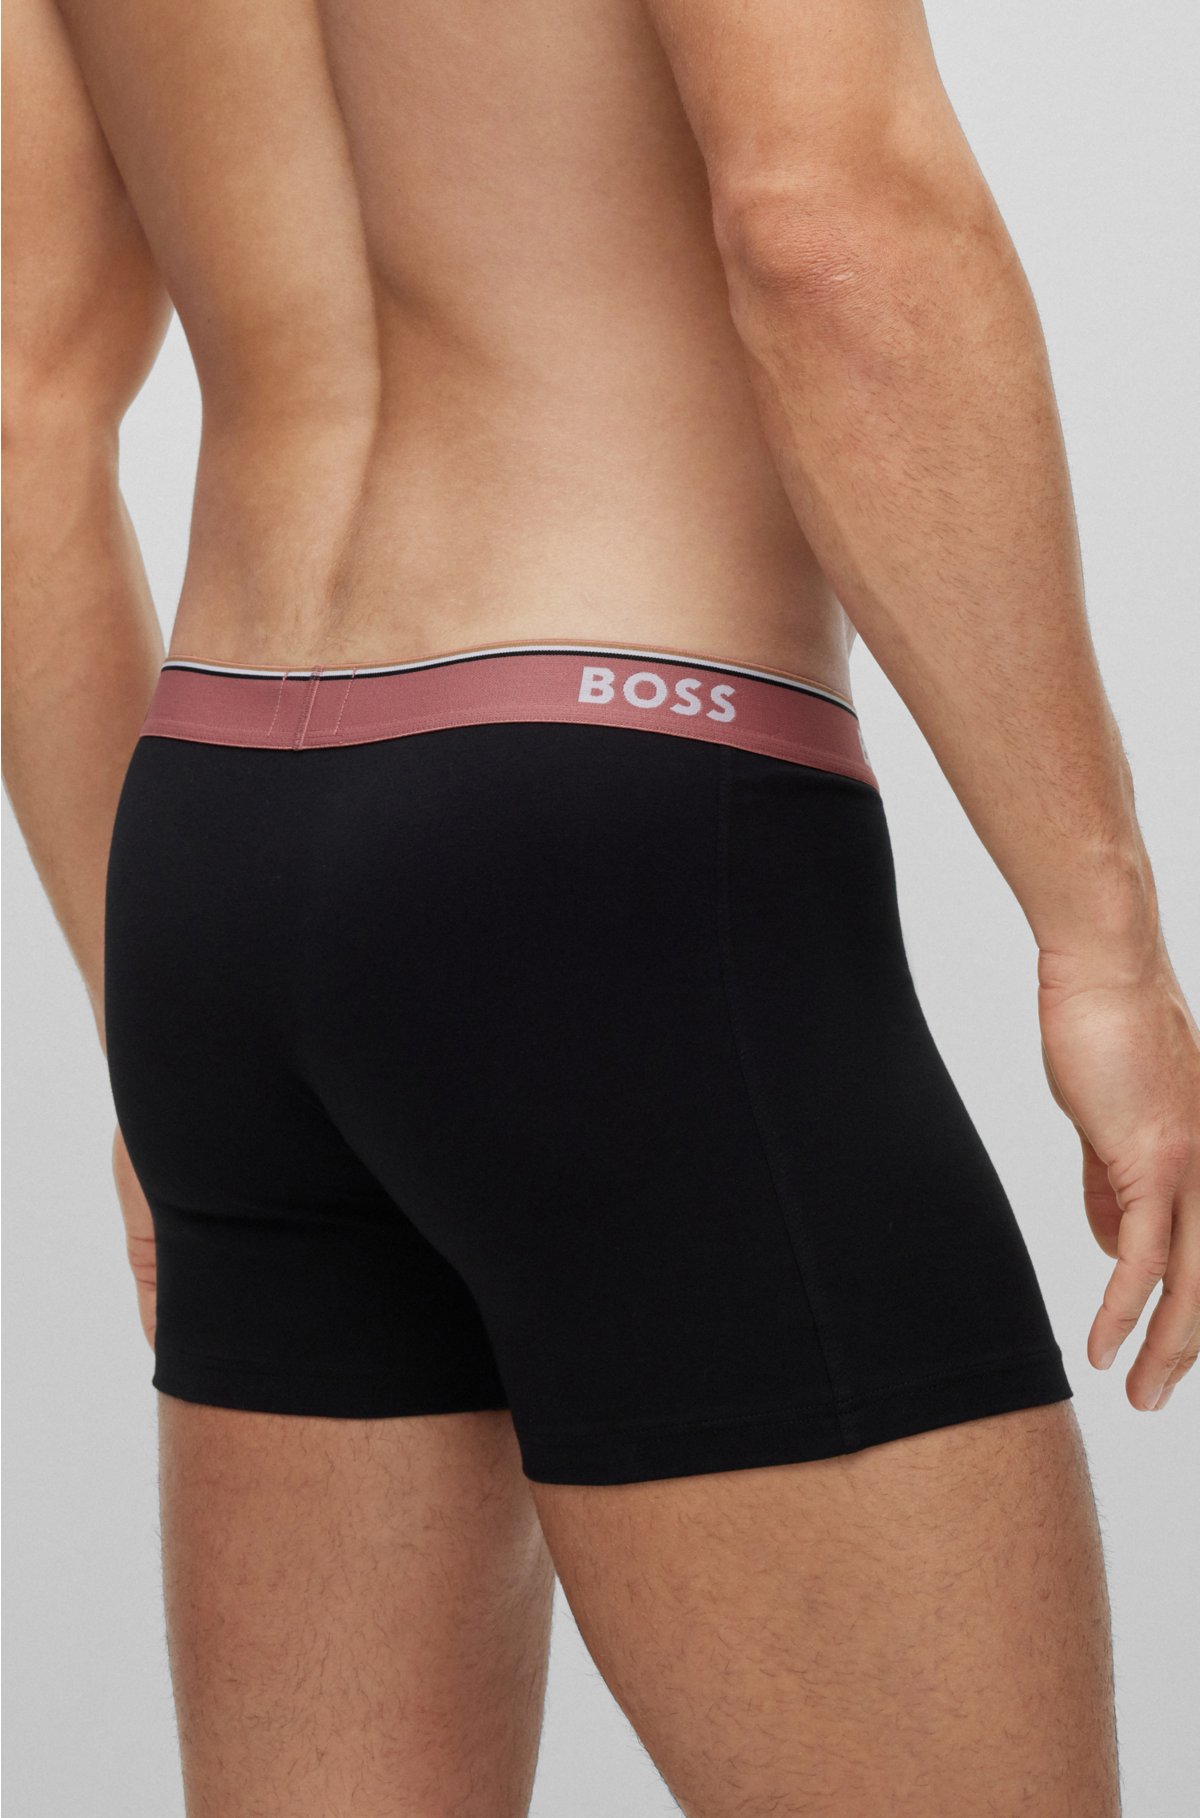 DISPENSER S2 Men's Modal Underwear Briefs Pack of 3